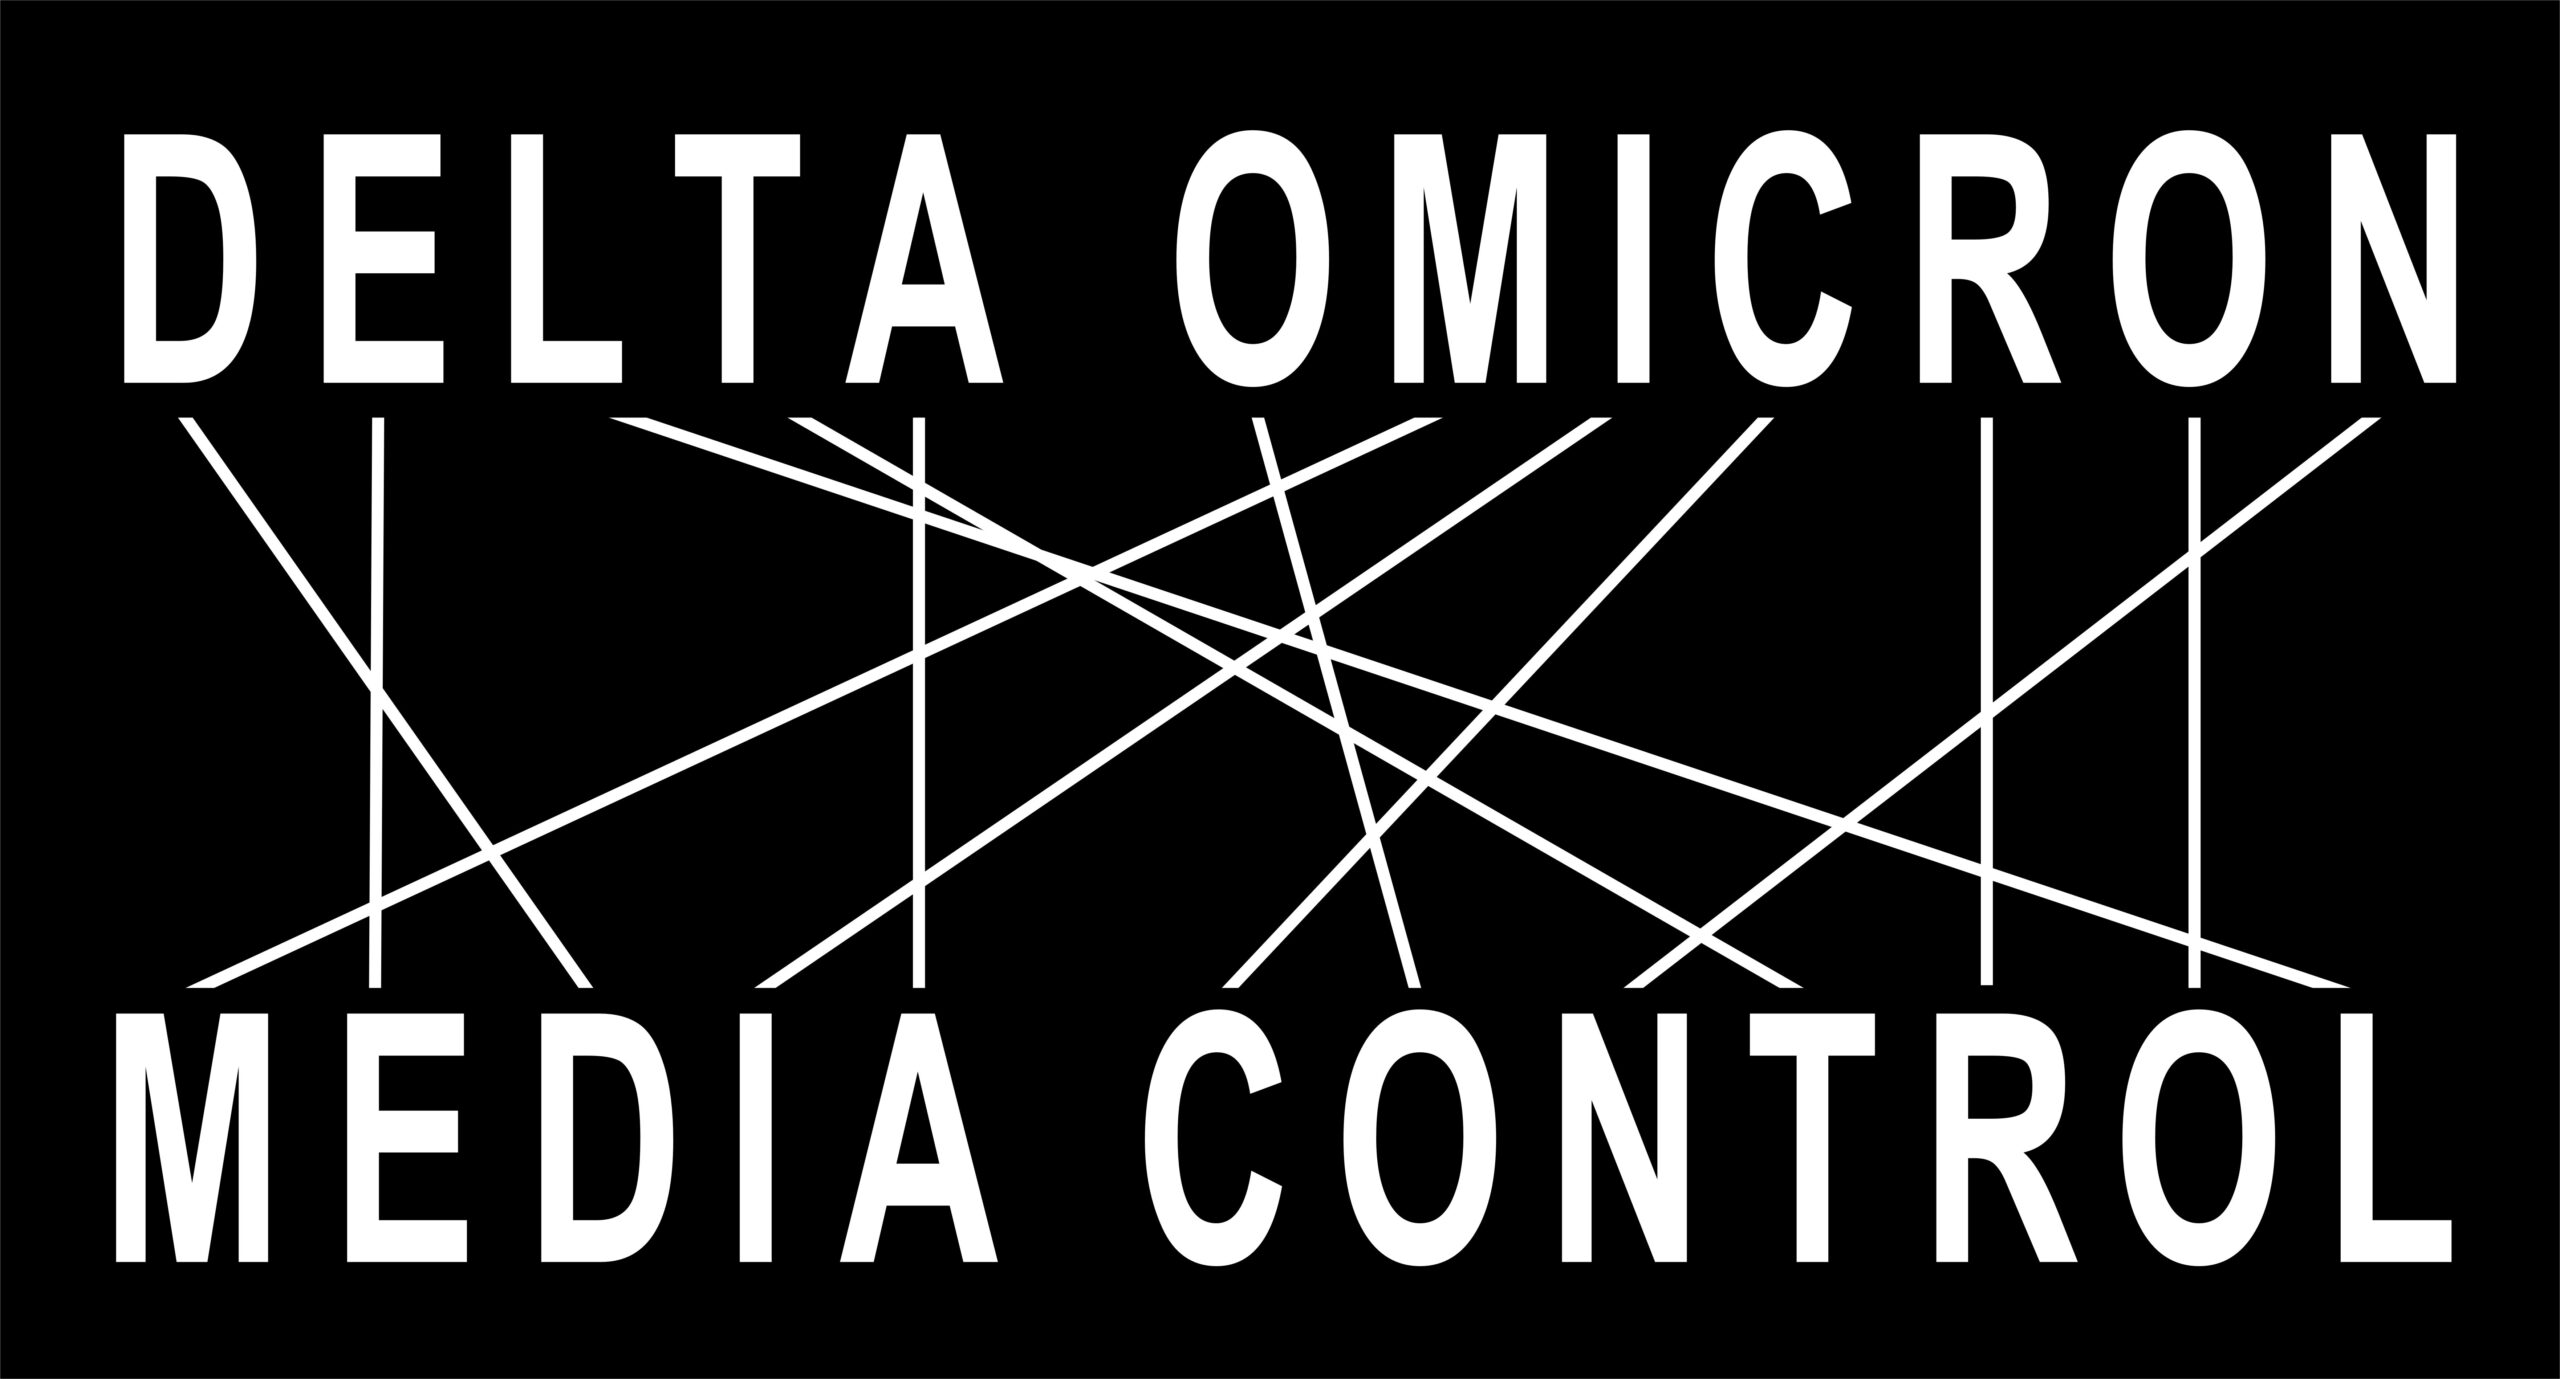 DELTA OMICRON = MEDIA CONTROL